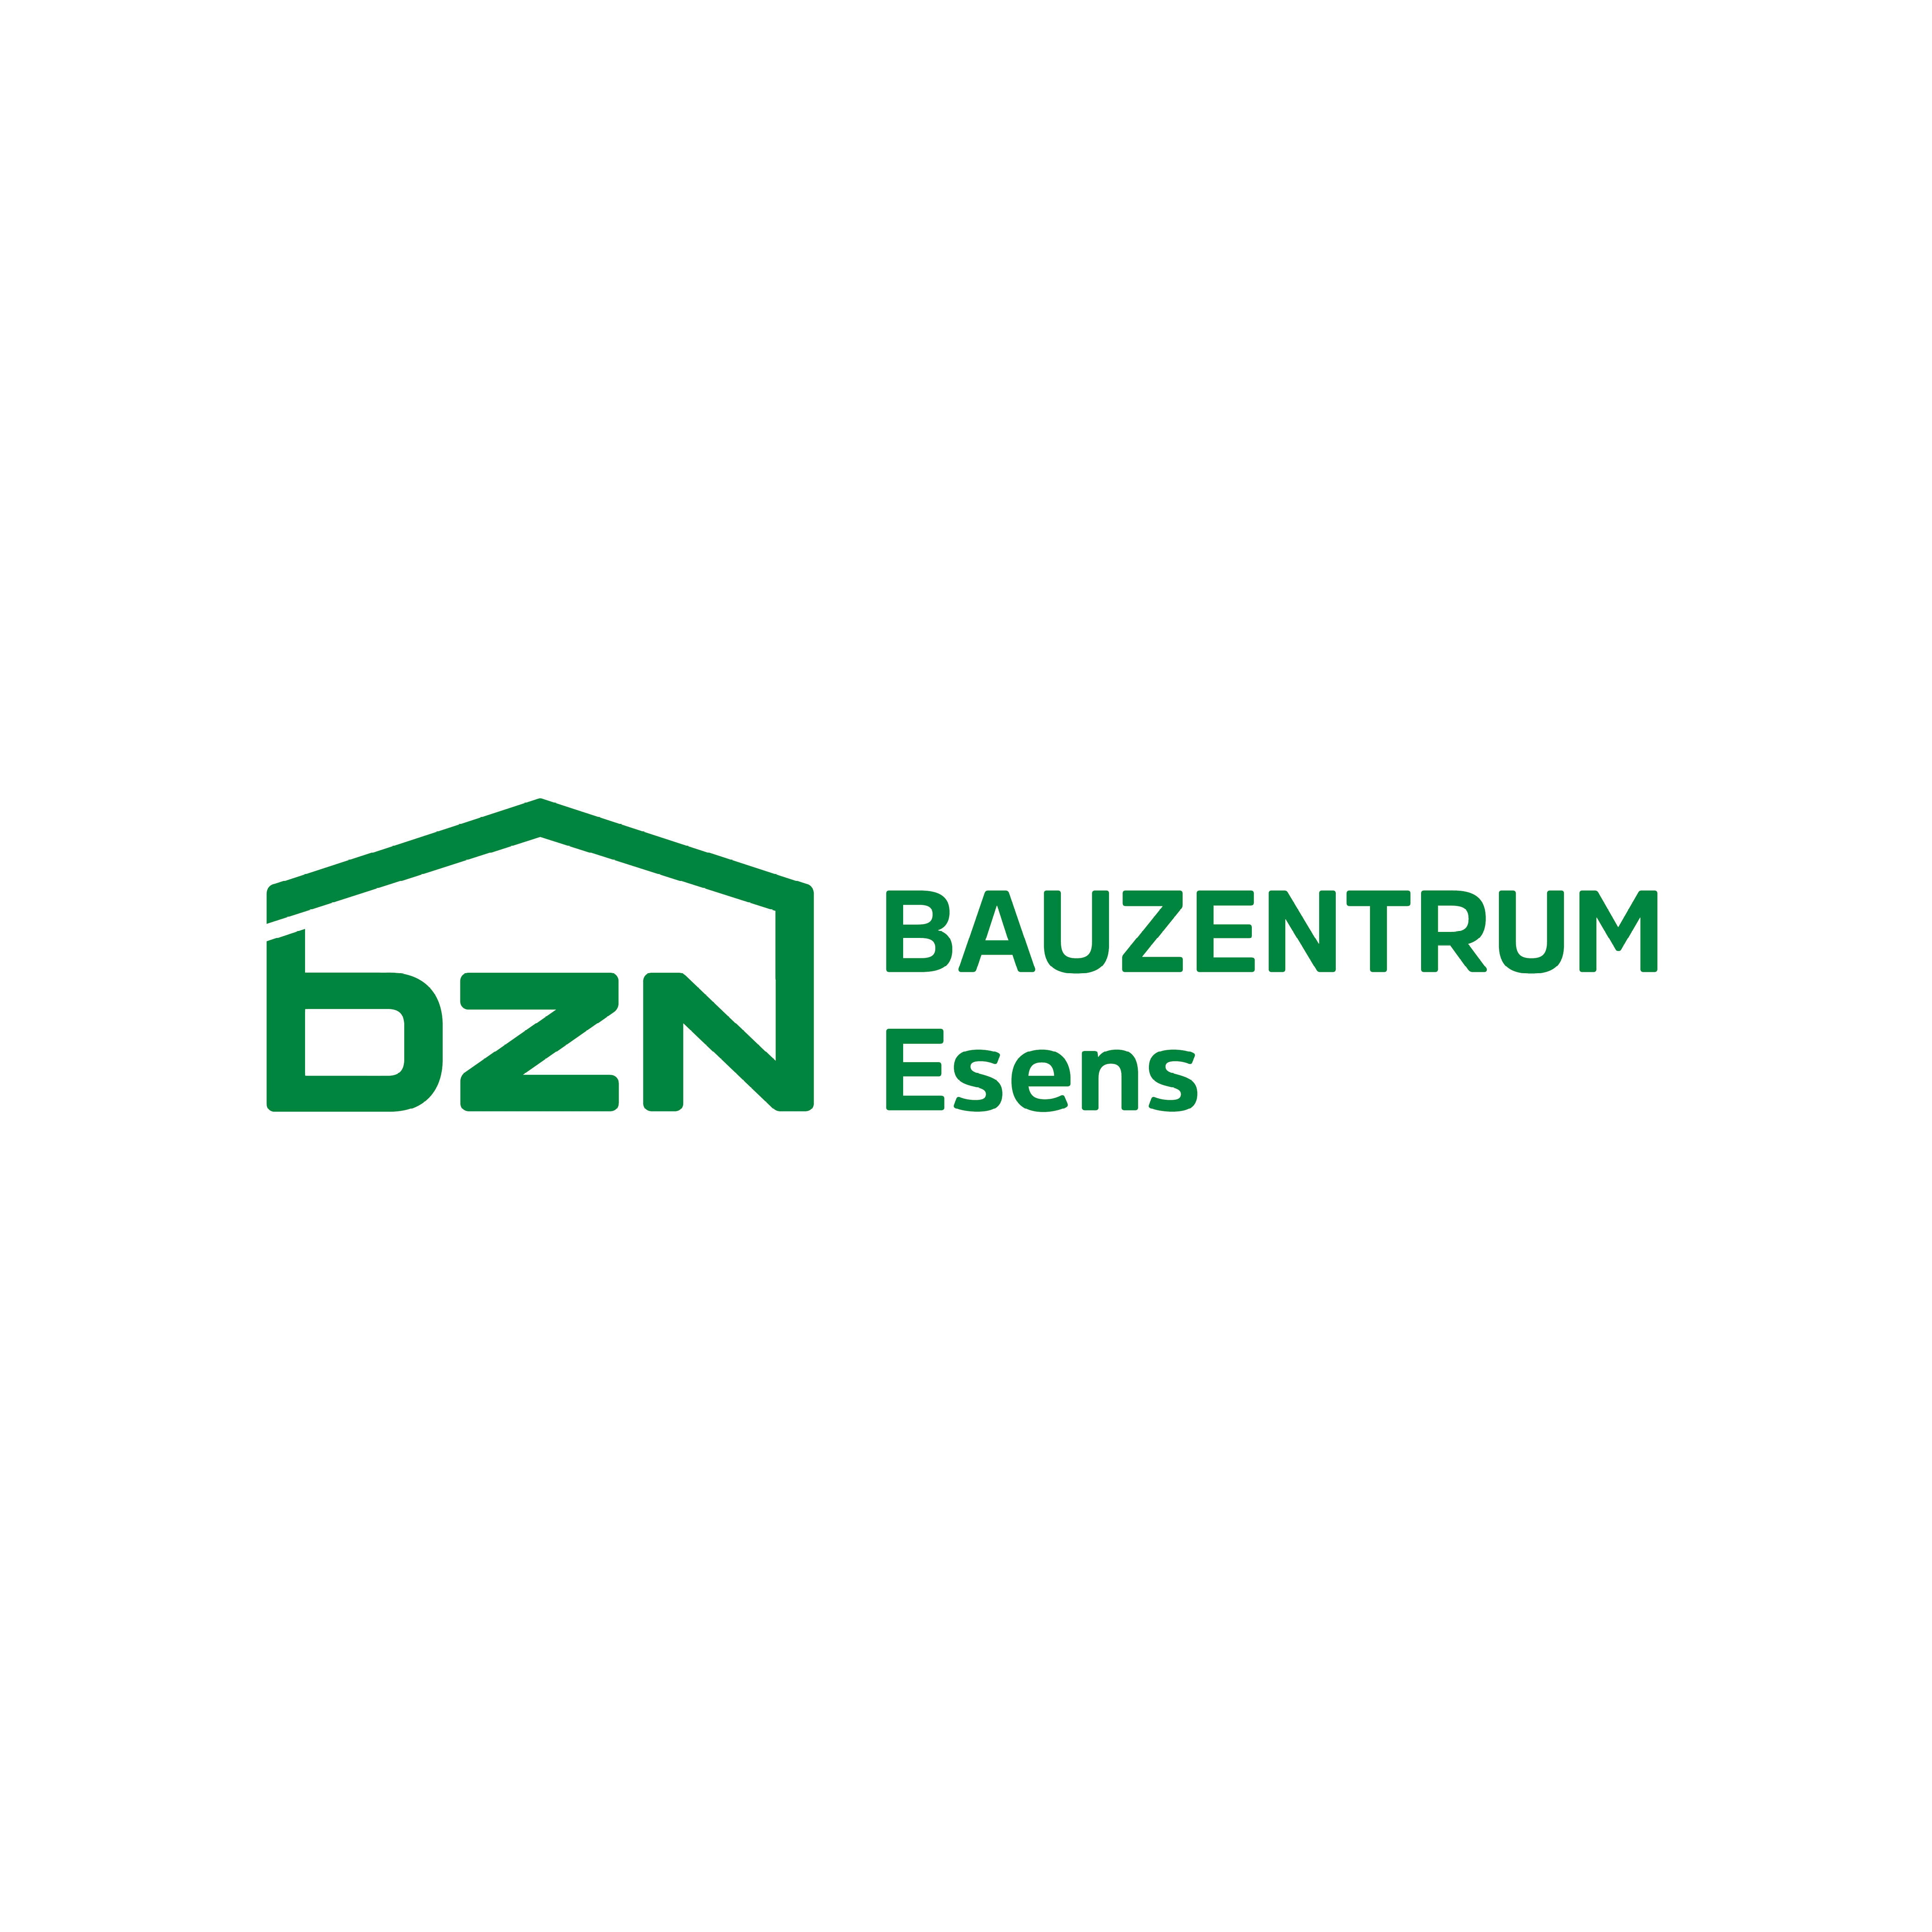 Kundenlogo BZN Bauzentrum Esens GmbH & Co. KG